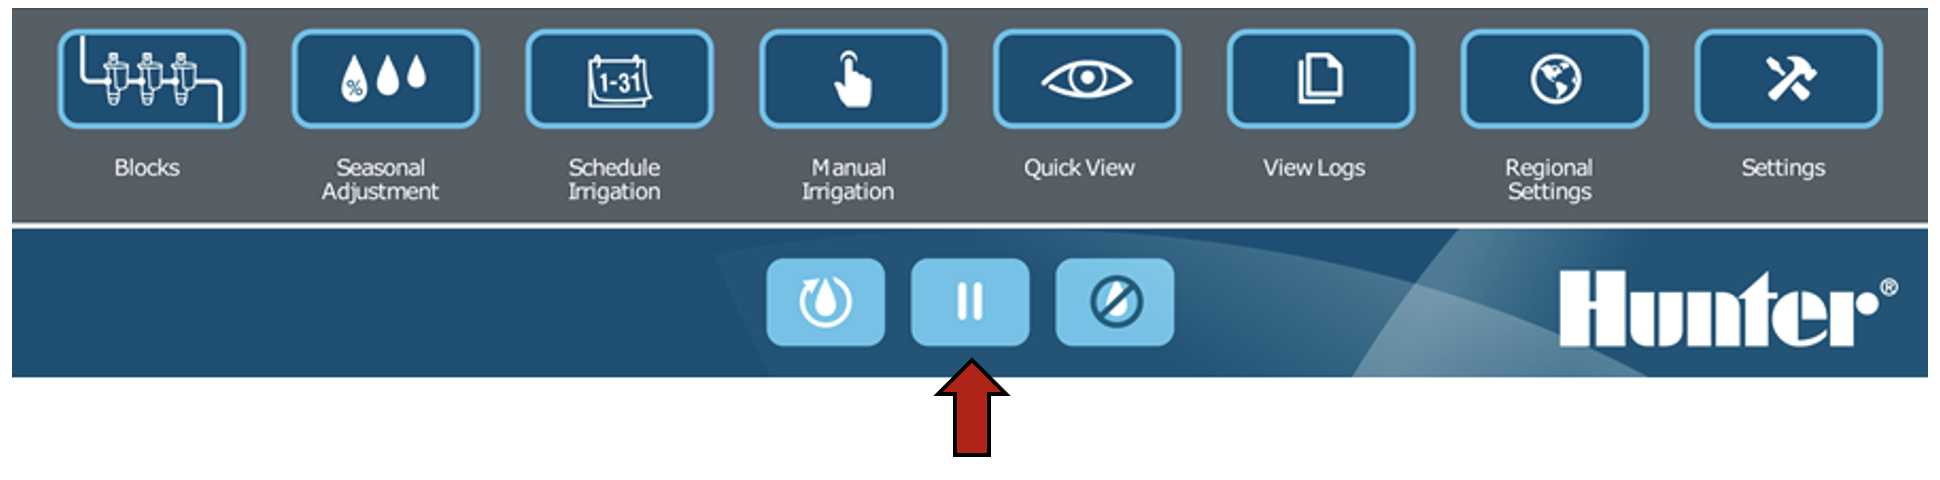 Immagine dell'interfaccia che evidenzia il pulsante Pausa.